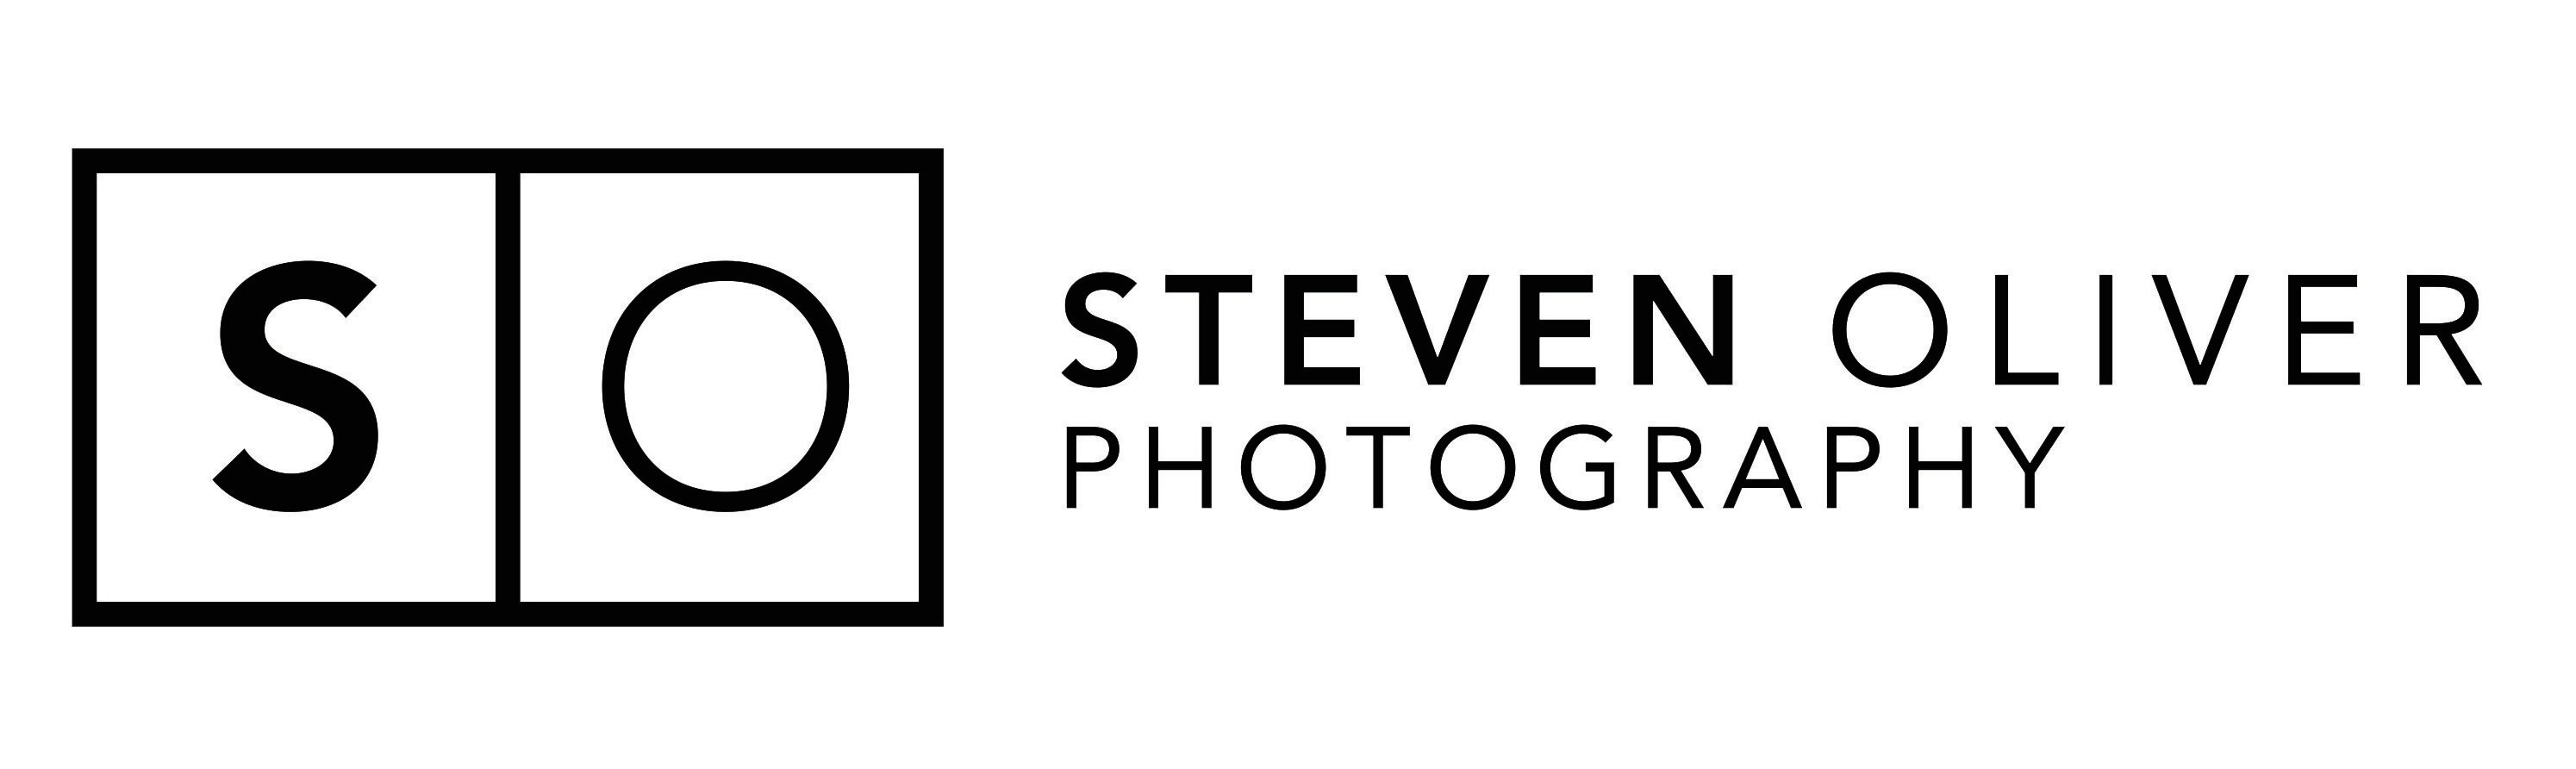 Steven Oliver Photography